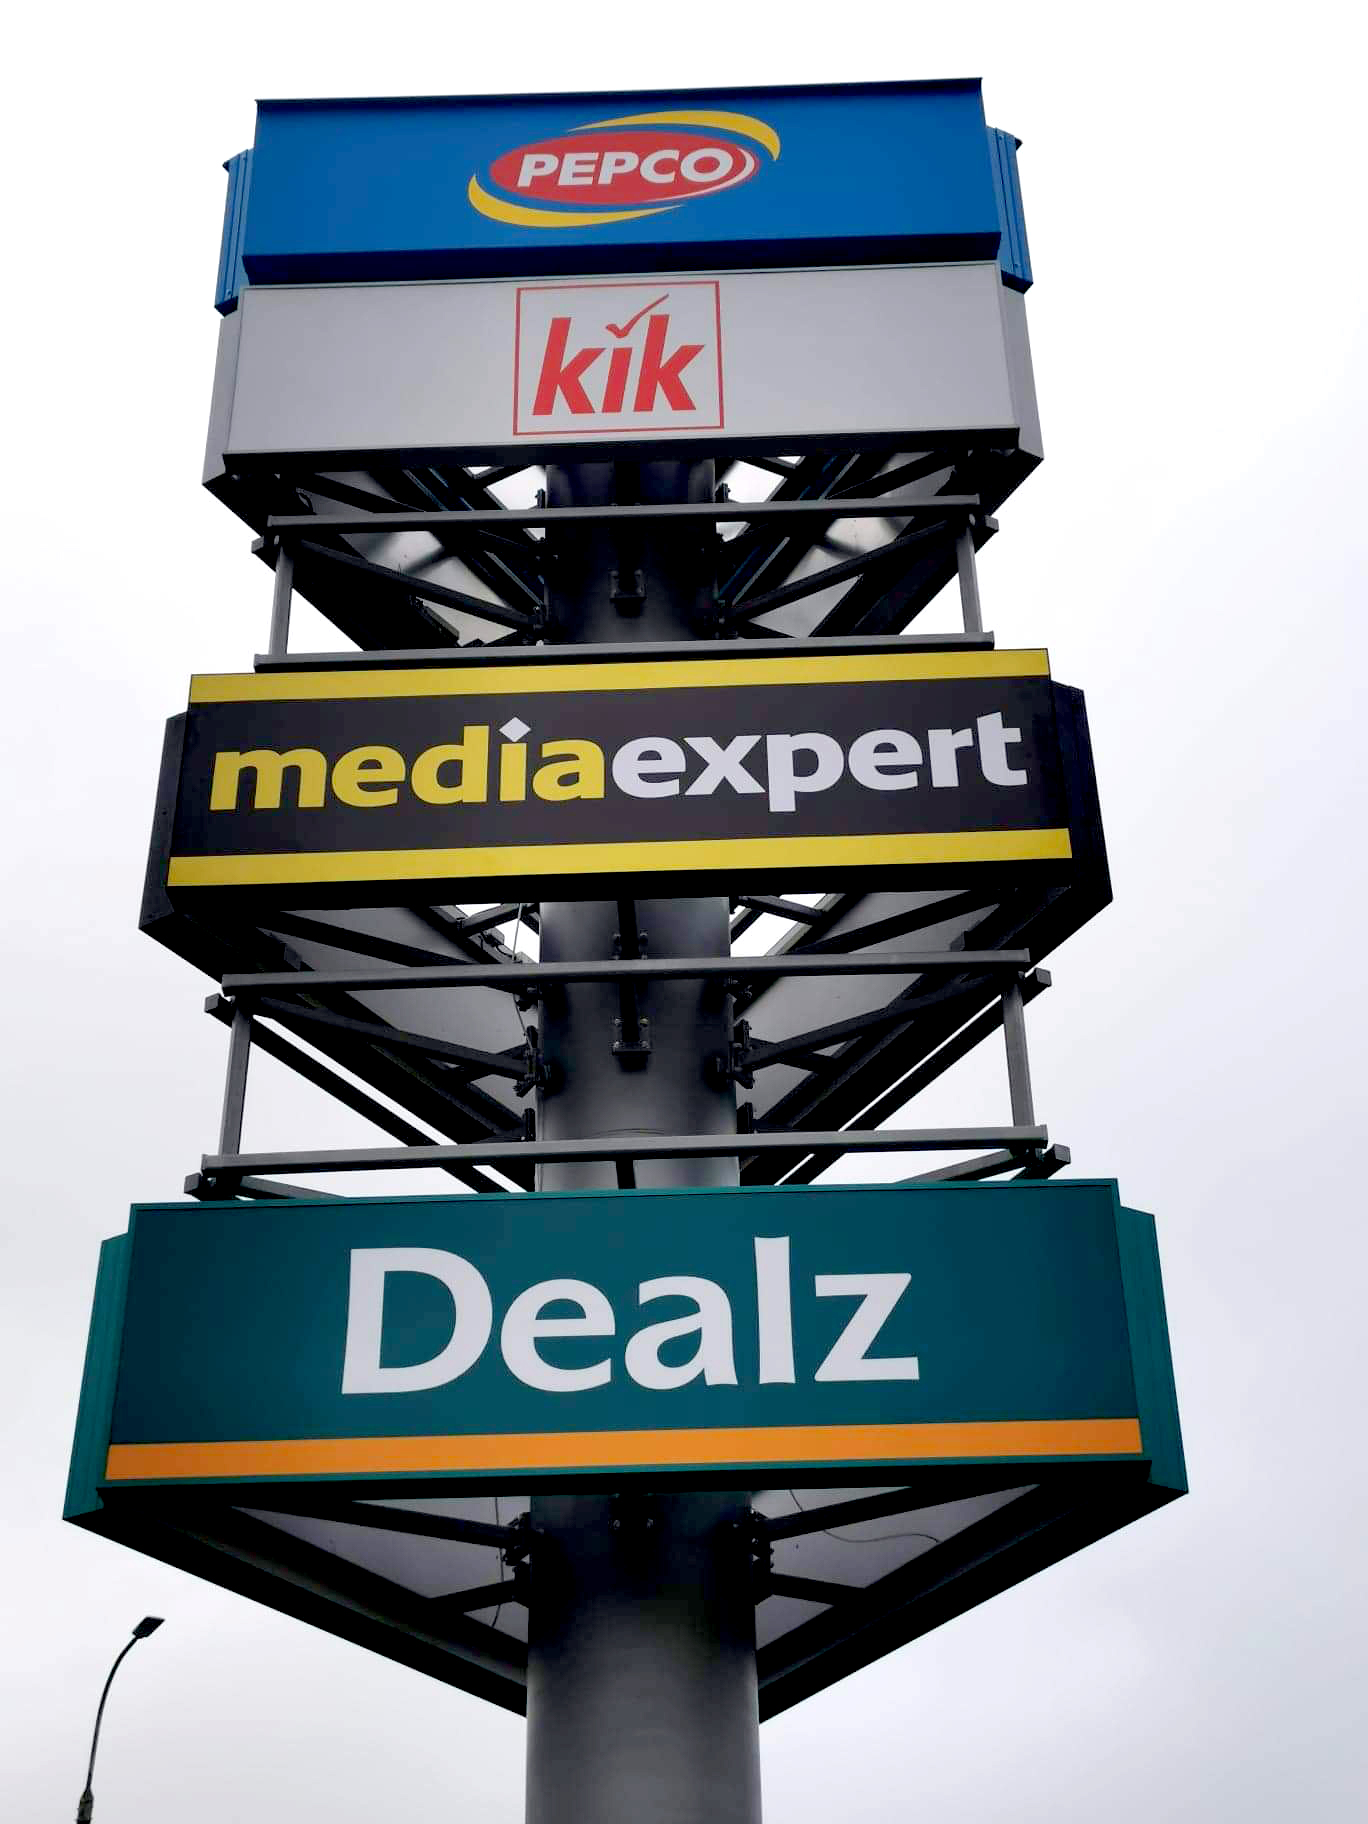 Media Expert Gdynia – logotyp podświetlany, brama wejściowa, banery, kasetony